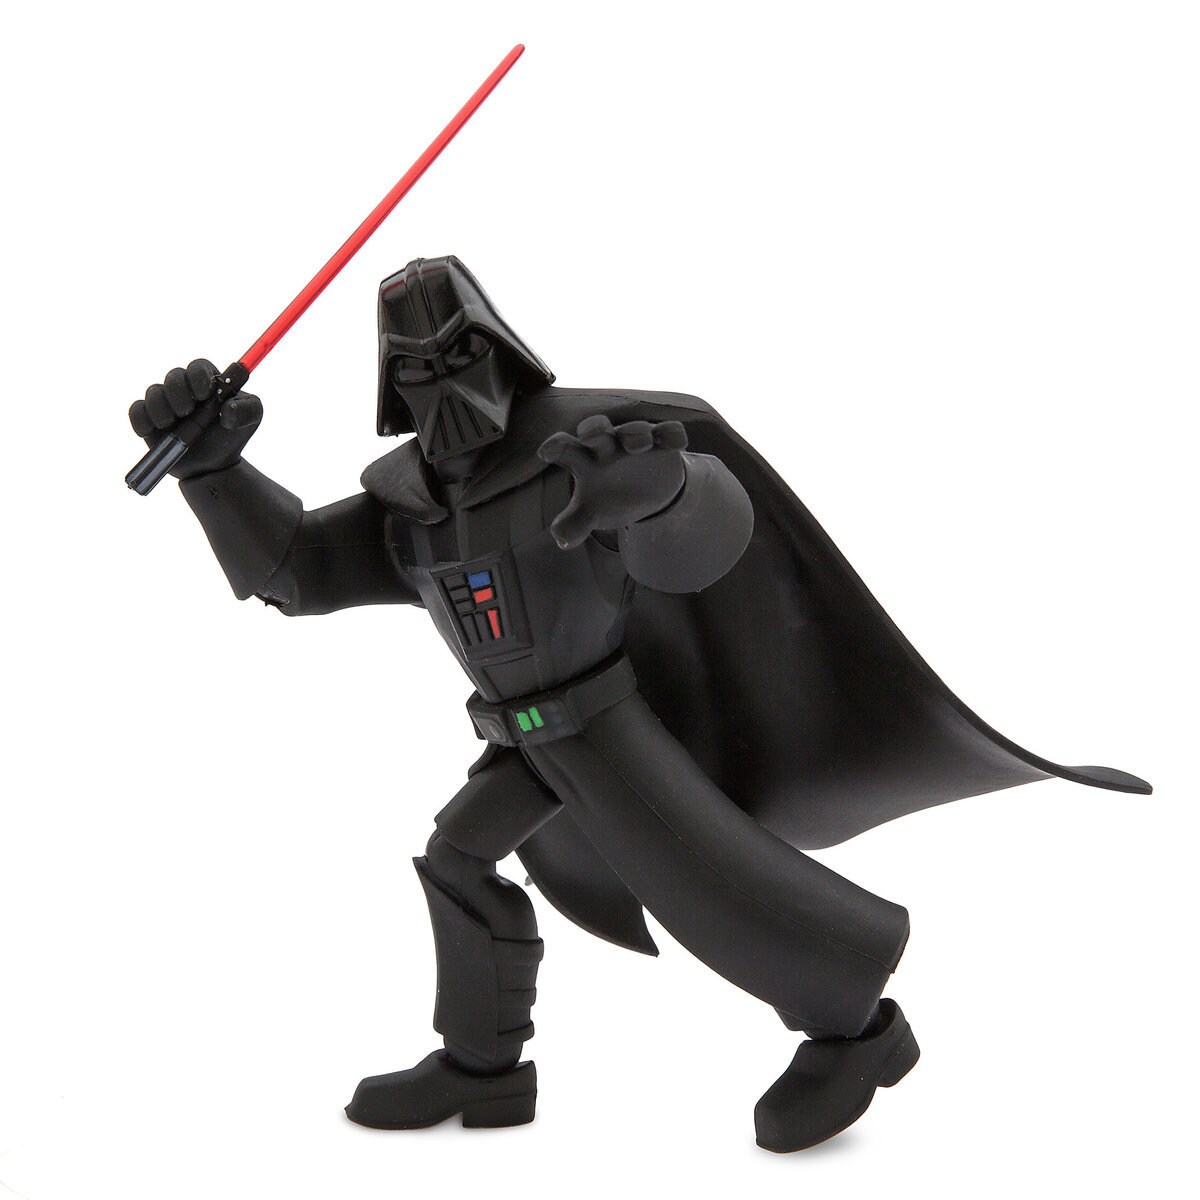 Darth Vader Action Figure - Star Wars Toybox